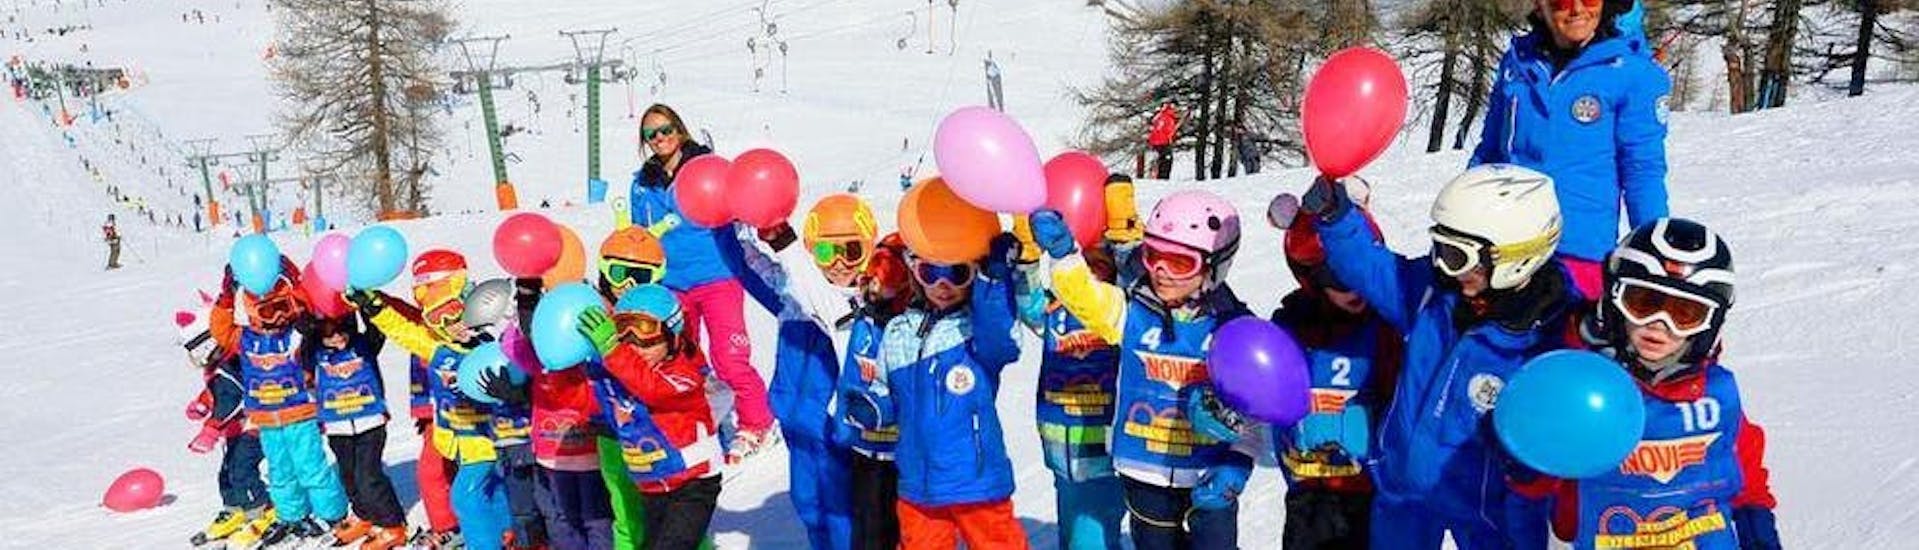 Kinder Skikurs (5-14 J.) für Anfänger.